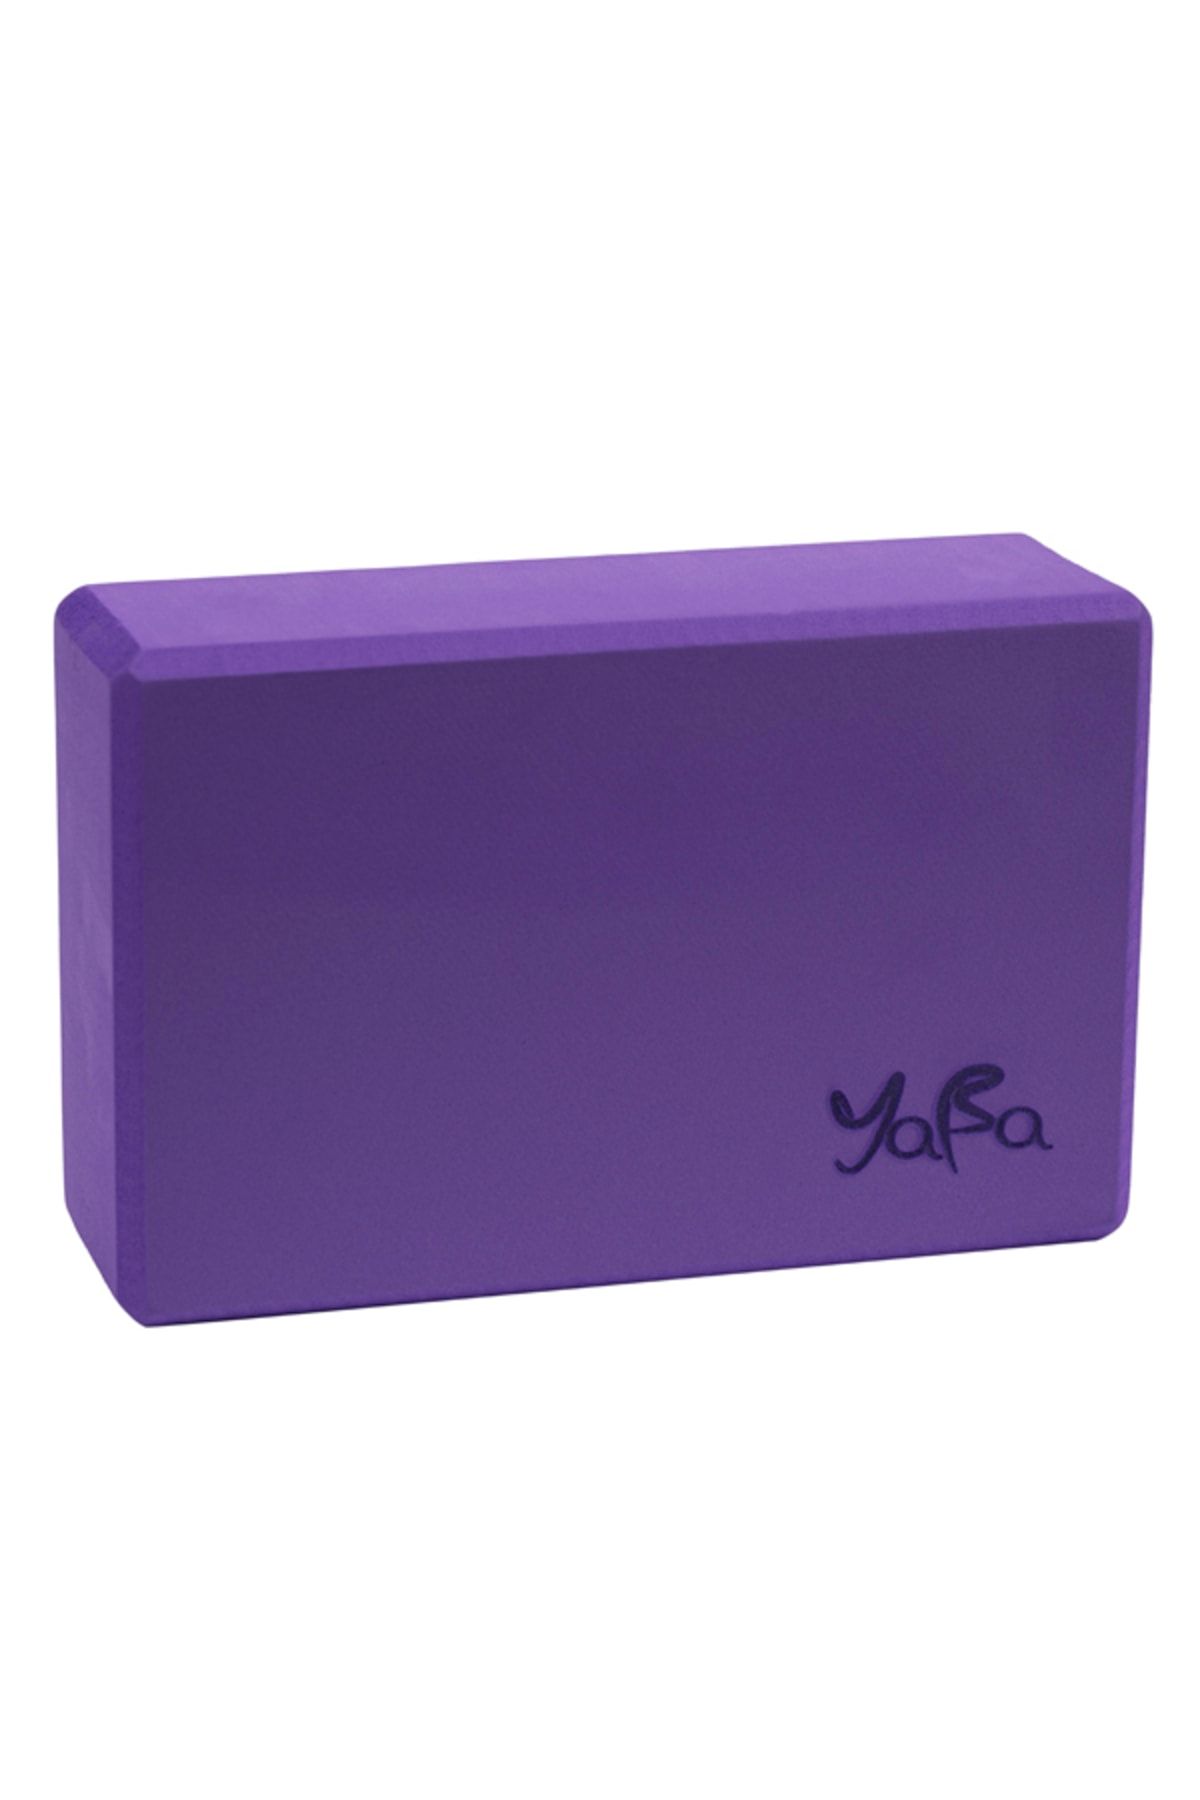 YABA Yoga Blok - Köpük Yoga Bloğu Mor